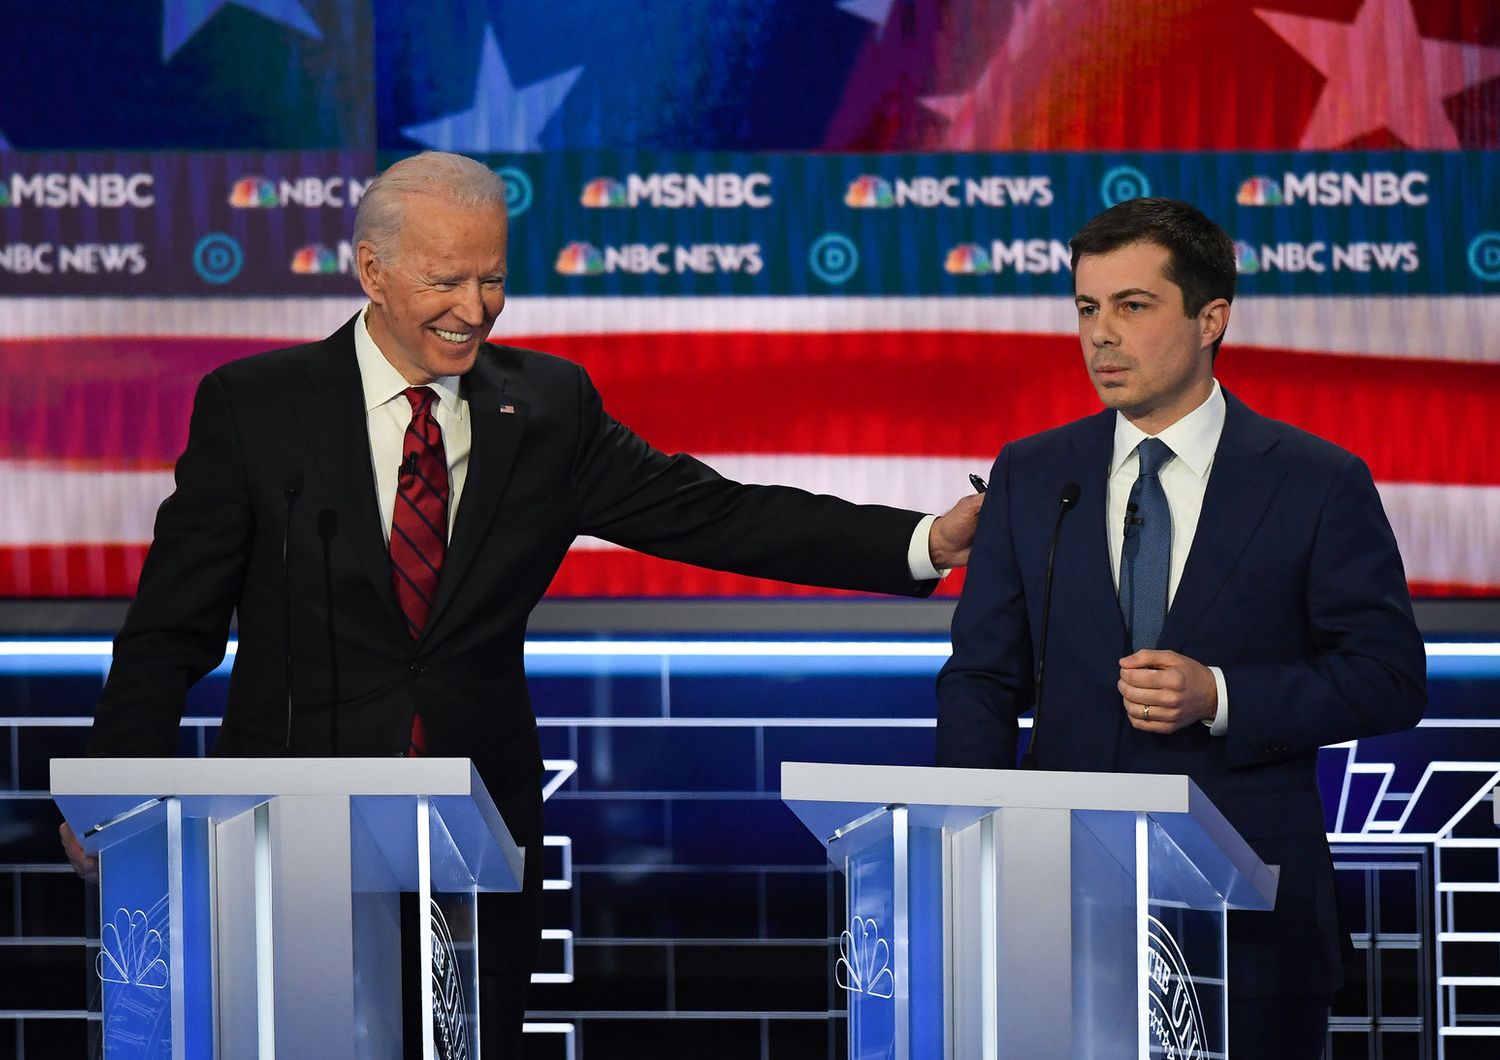 Joe Biden e Pete Buttigieg durante l'ultimo dibattito tv tra i candidati democratici.